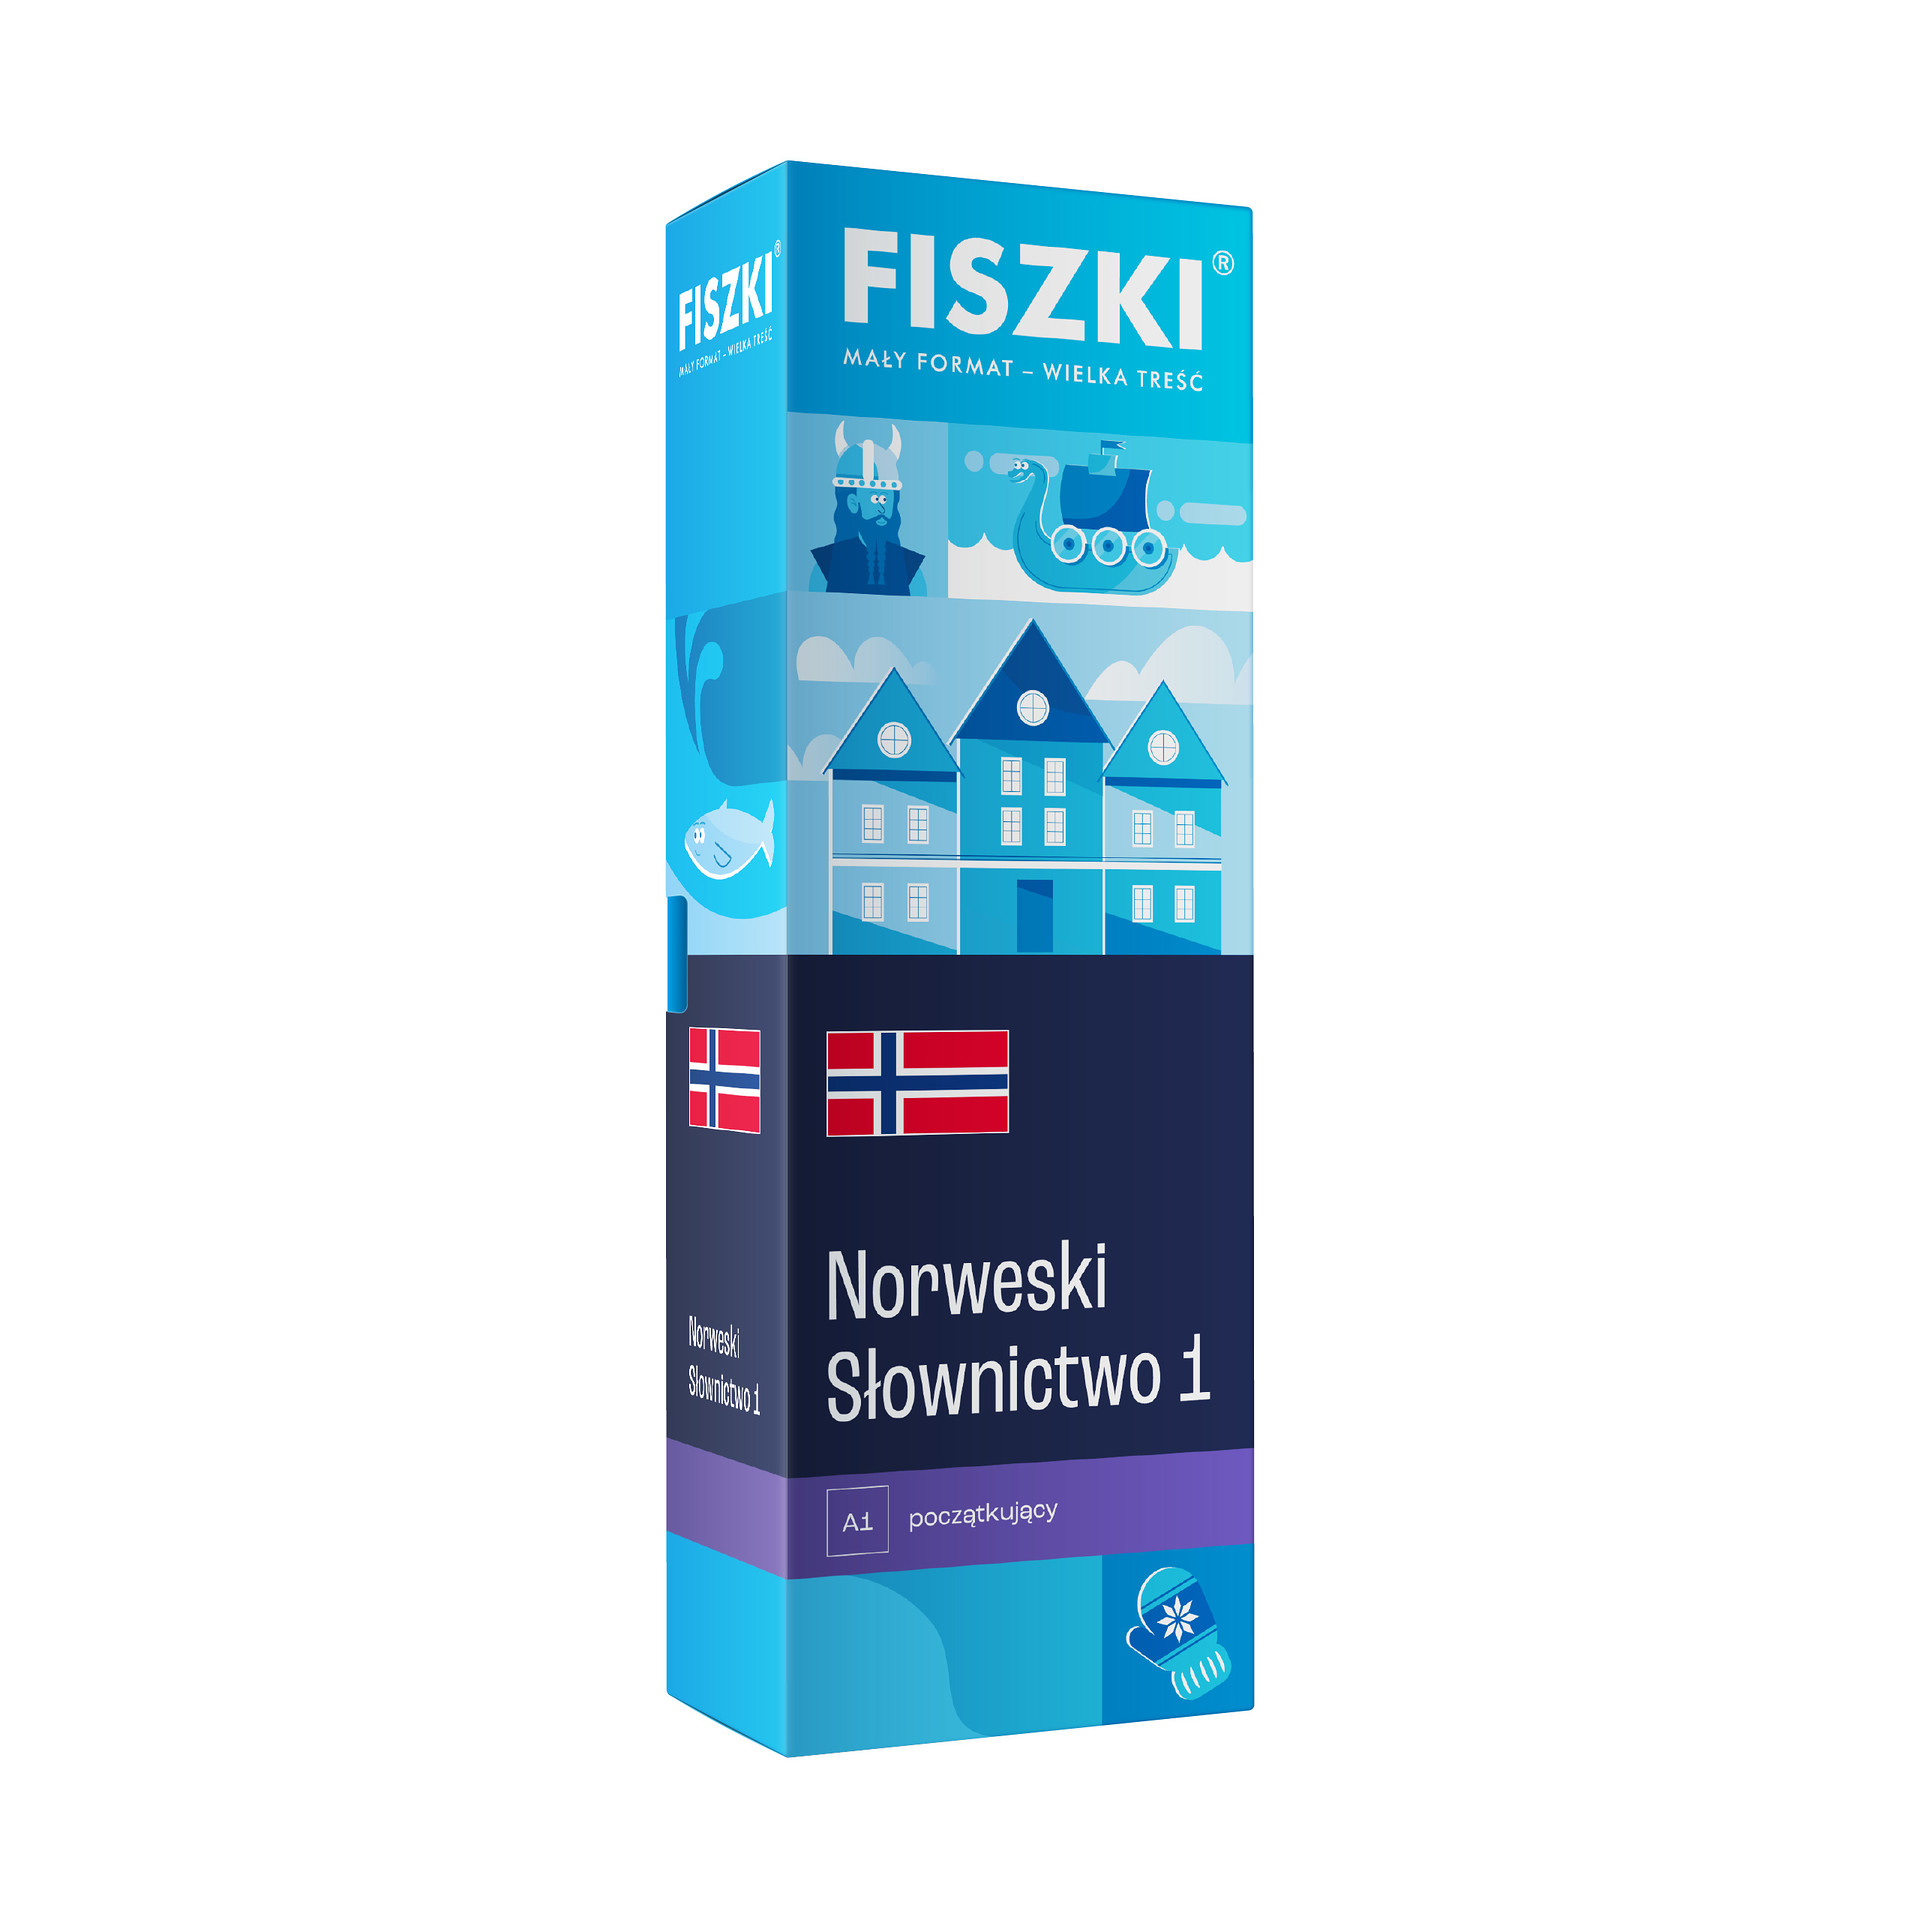 FISZKI - język norweski - Słownictwo 1 (poziom A1)